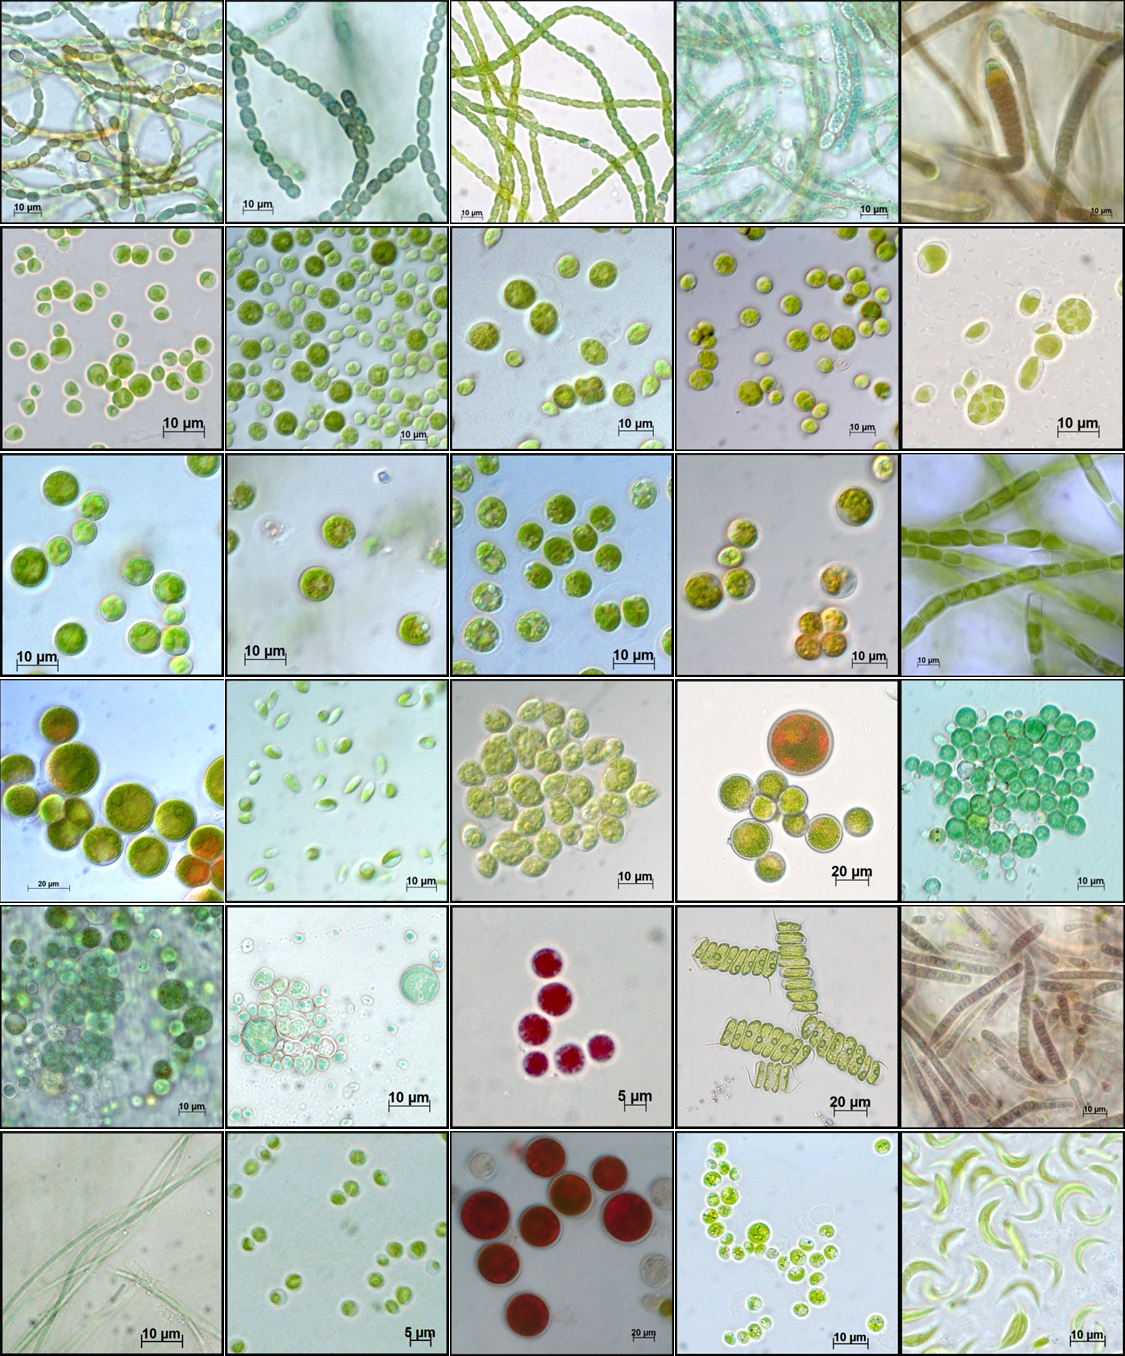 Different algae